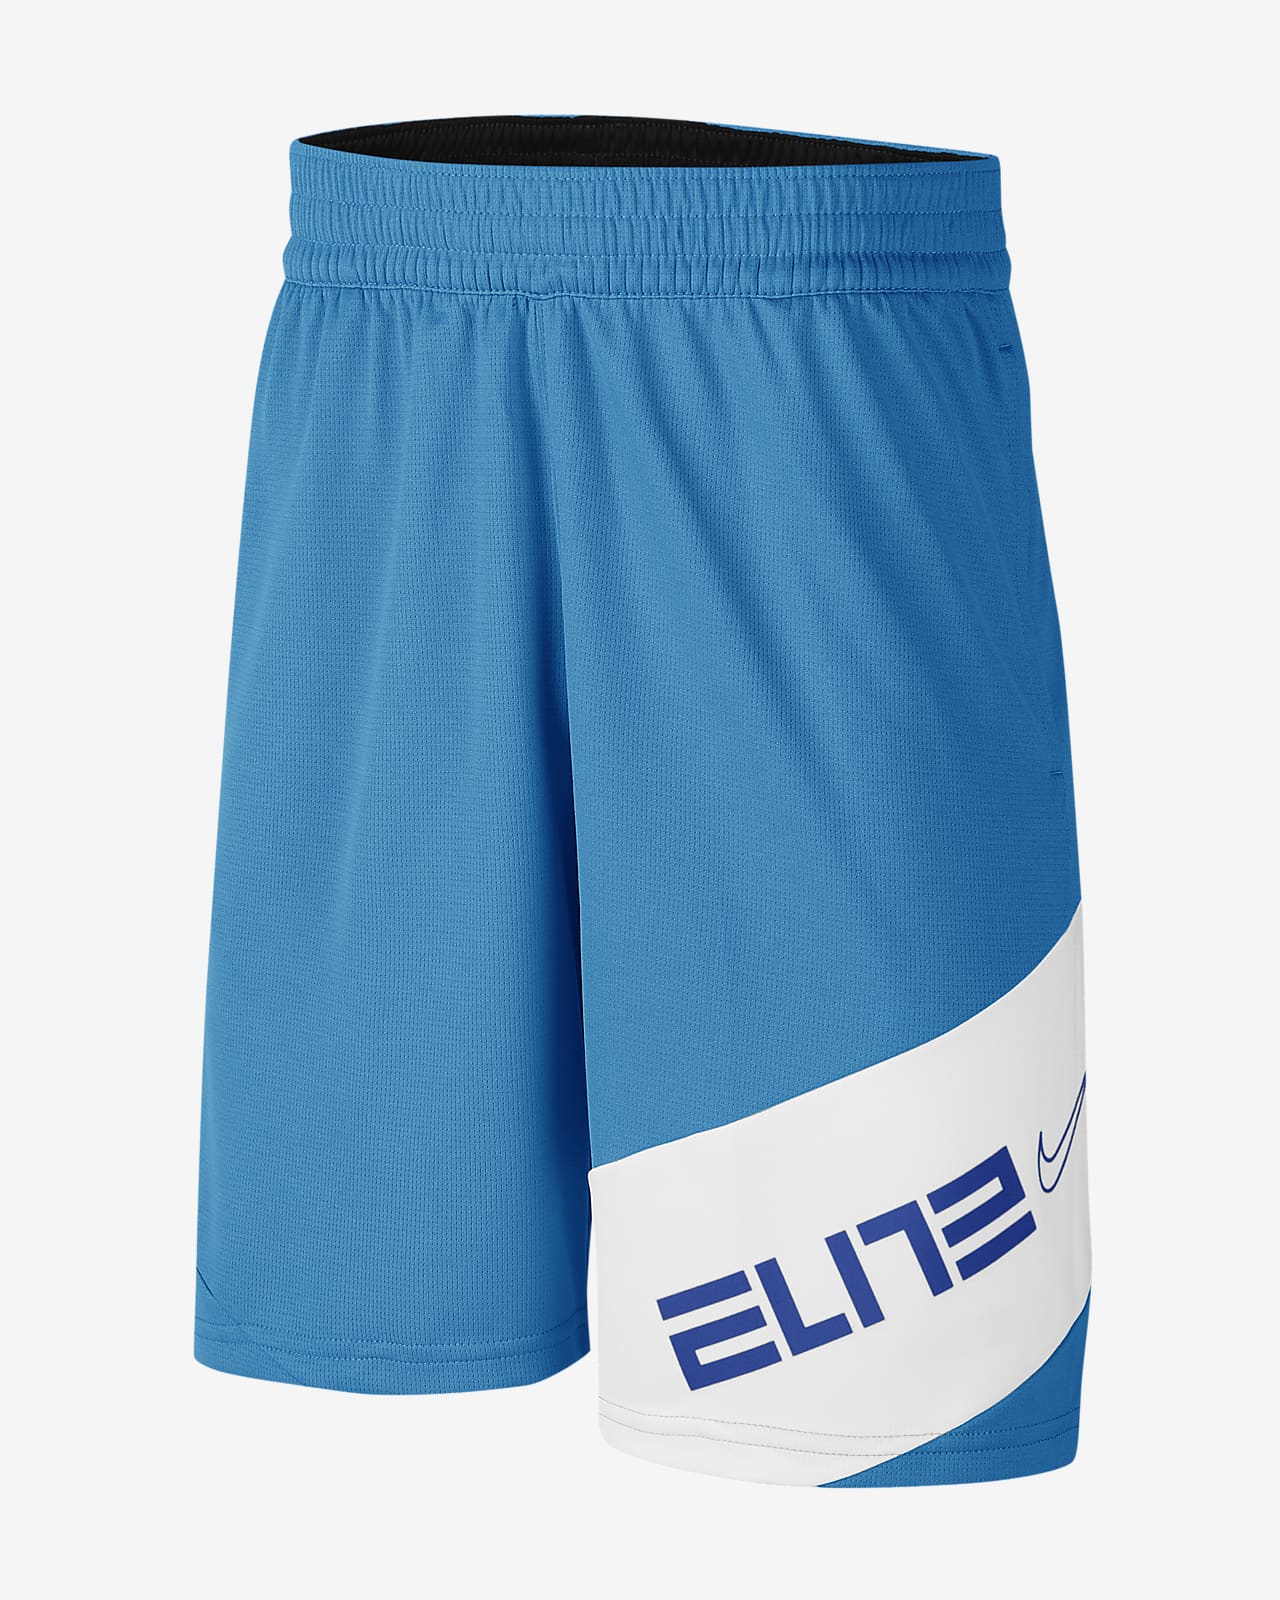 nike elite training shorts